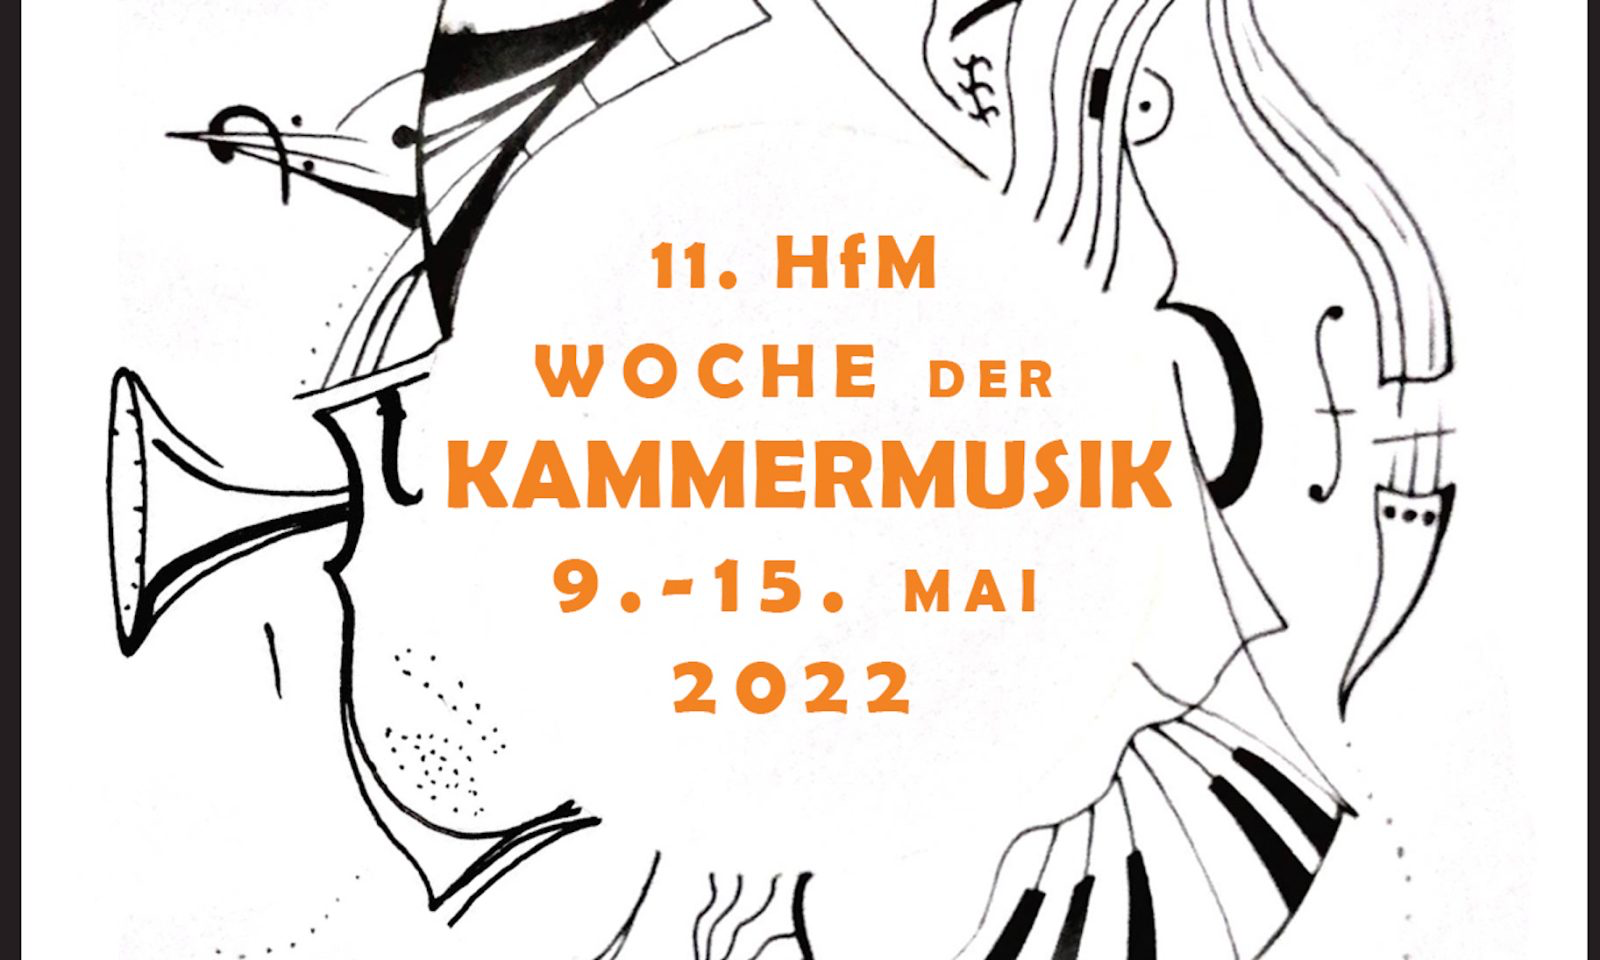 11. HfM Woche der Kammermusik 9. bis 15. Mai 2022